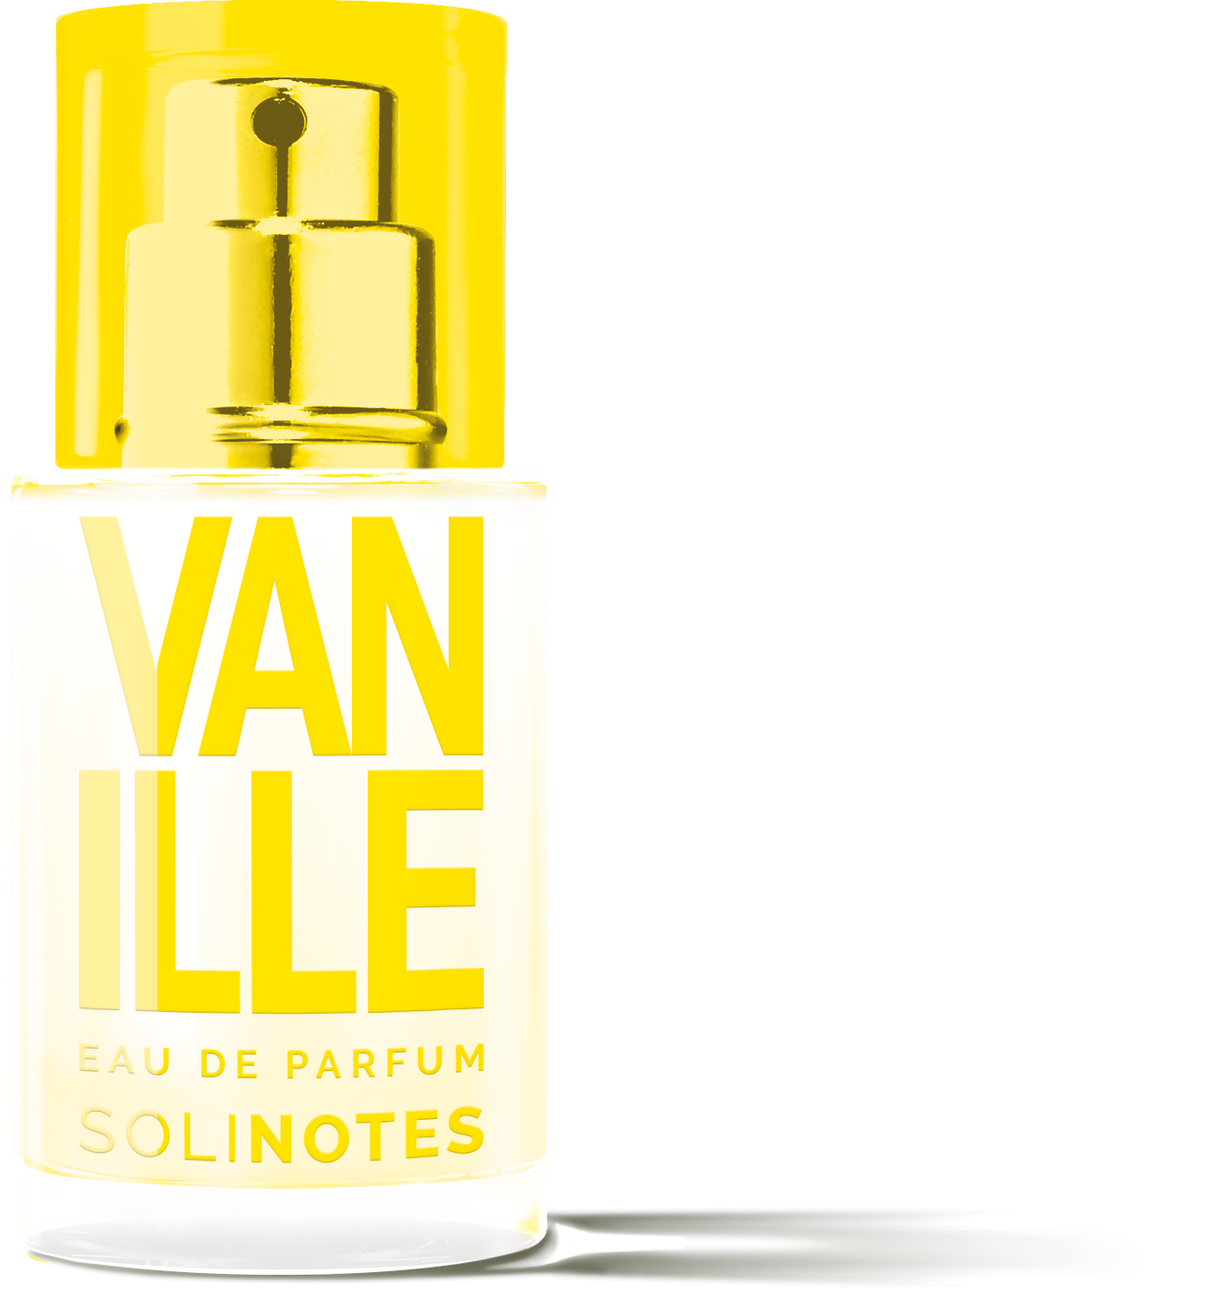 Solinotes - Mini Vanilla Eau de Parfum 0.5 oz- CLEAN BEAUTY